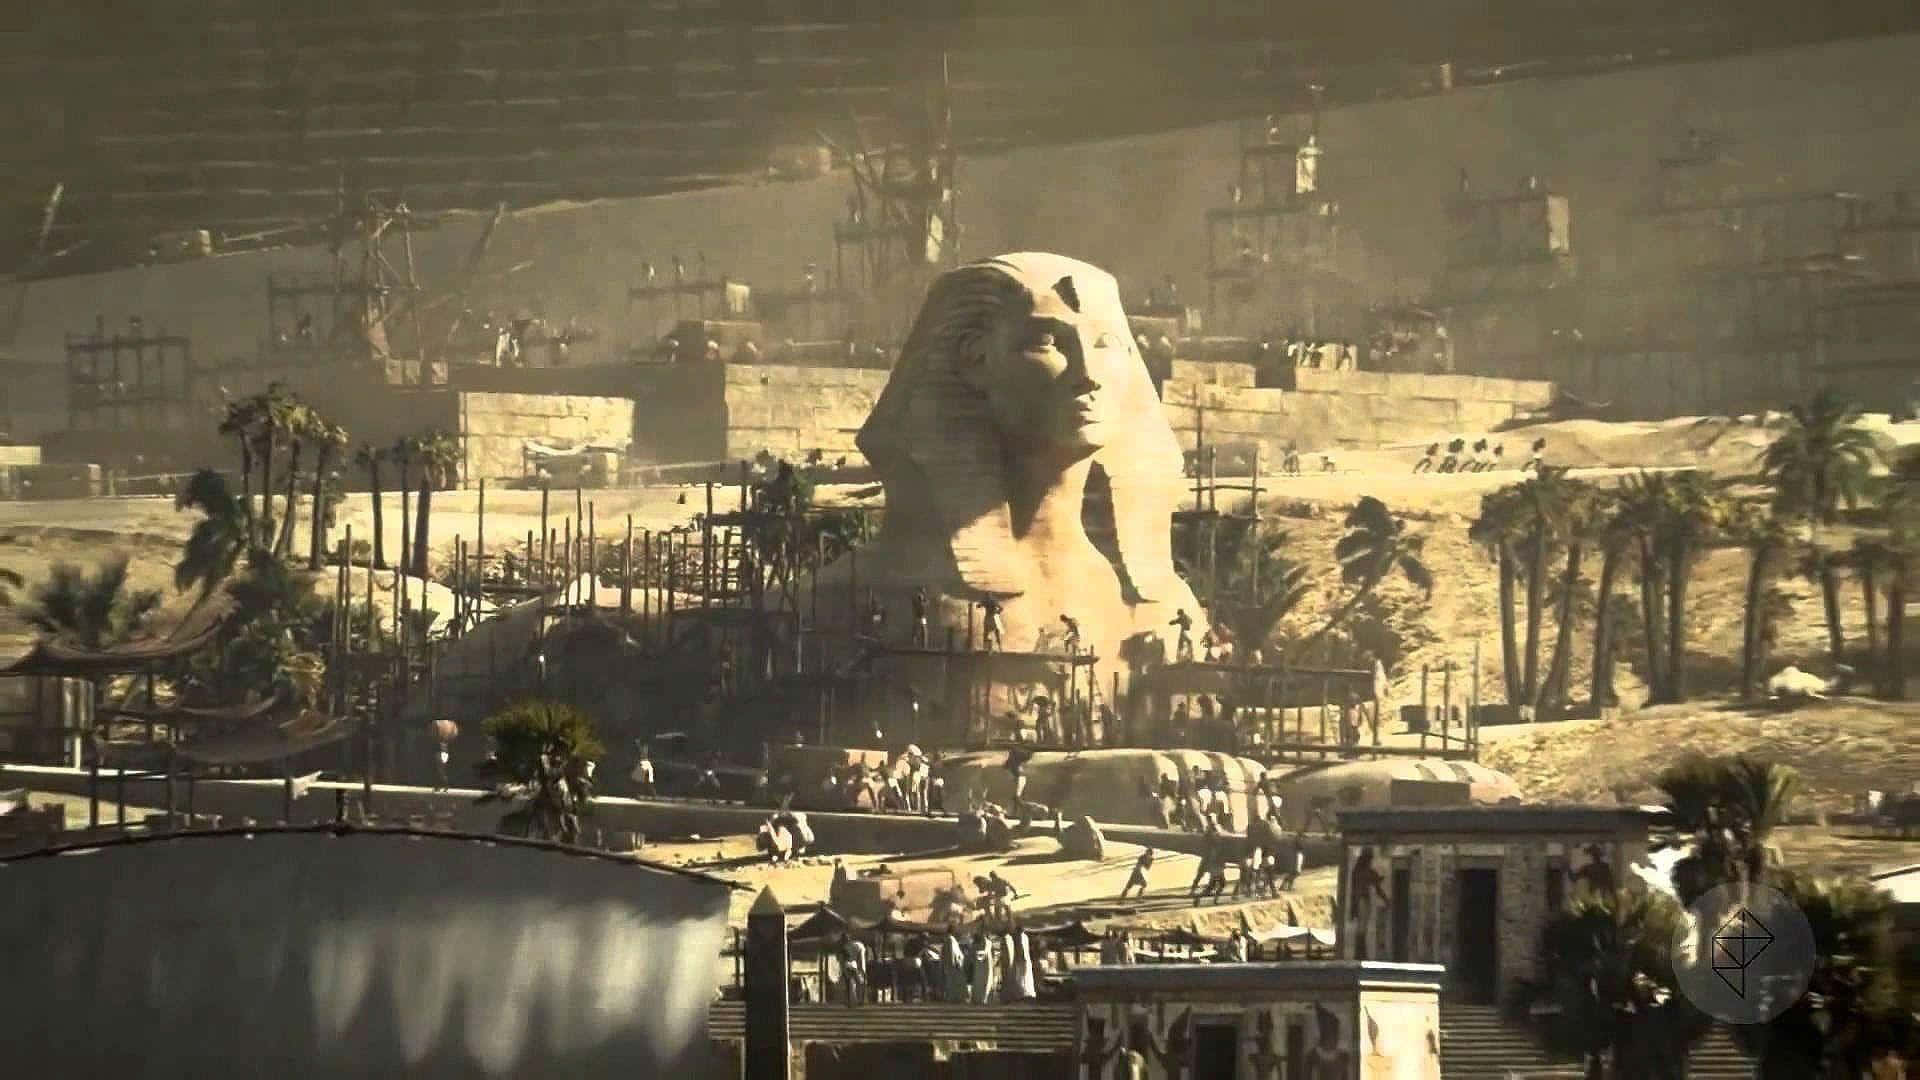 Fondode Pantalla De La Civilización Egipcia Más Allá De La Tierra, Con Una Resolución De 1920x1080.